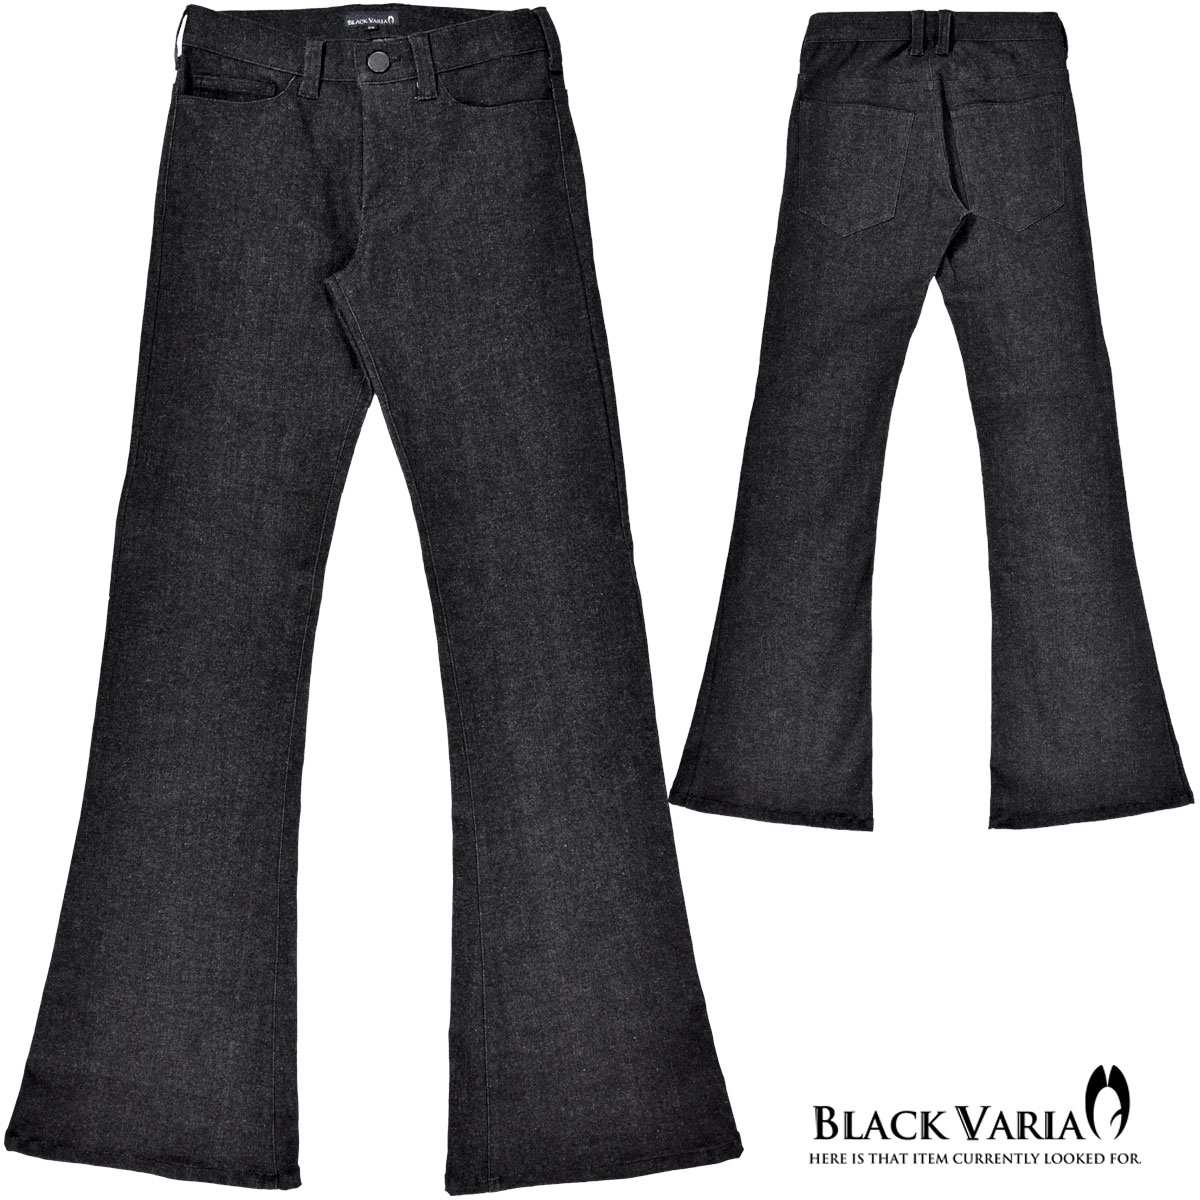 ベルボトム ブーツカット フレア パンツ 162252 デニム mens(ブラック黒) ジーパン ストレッチ ボトムス メンズ ズボン・パンツ